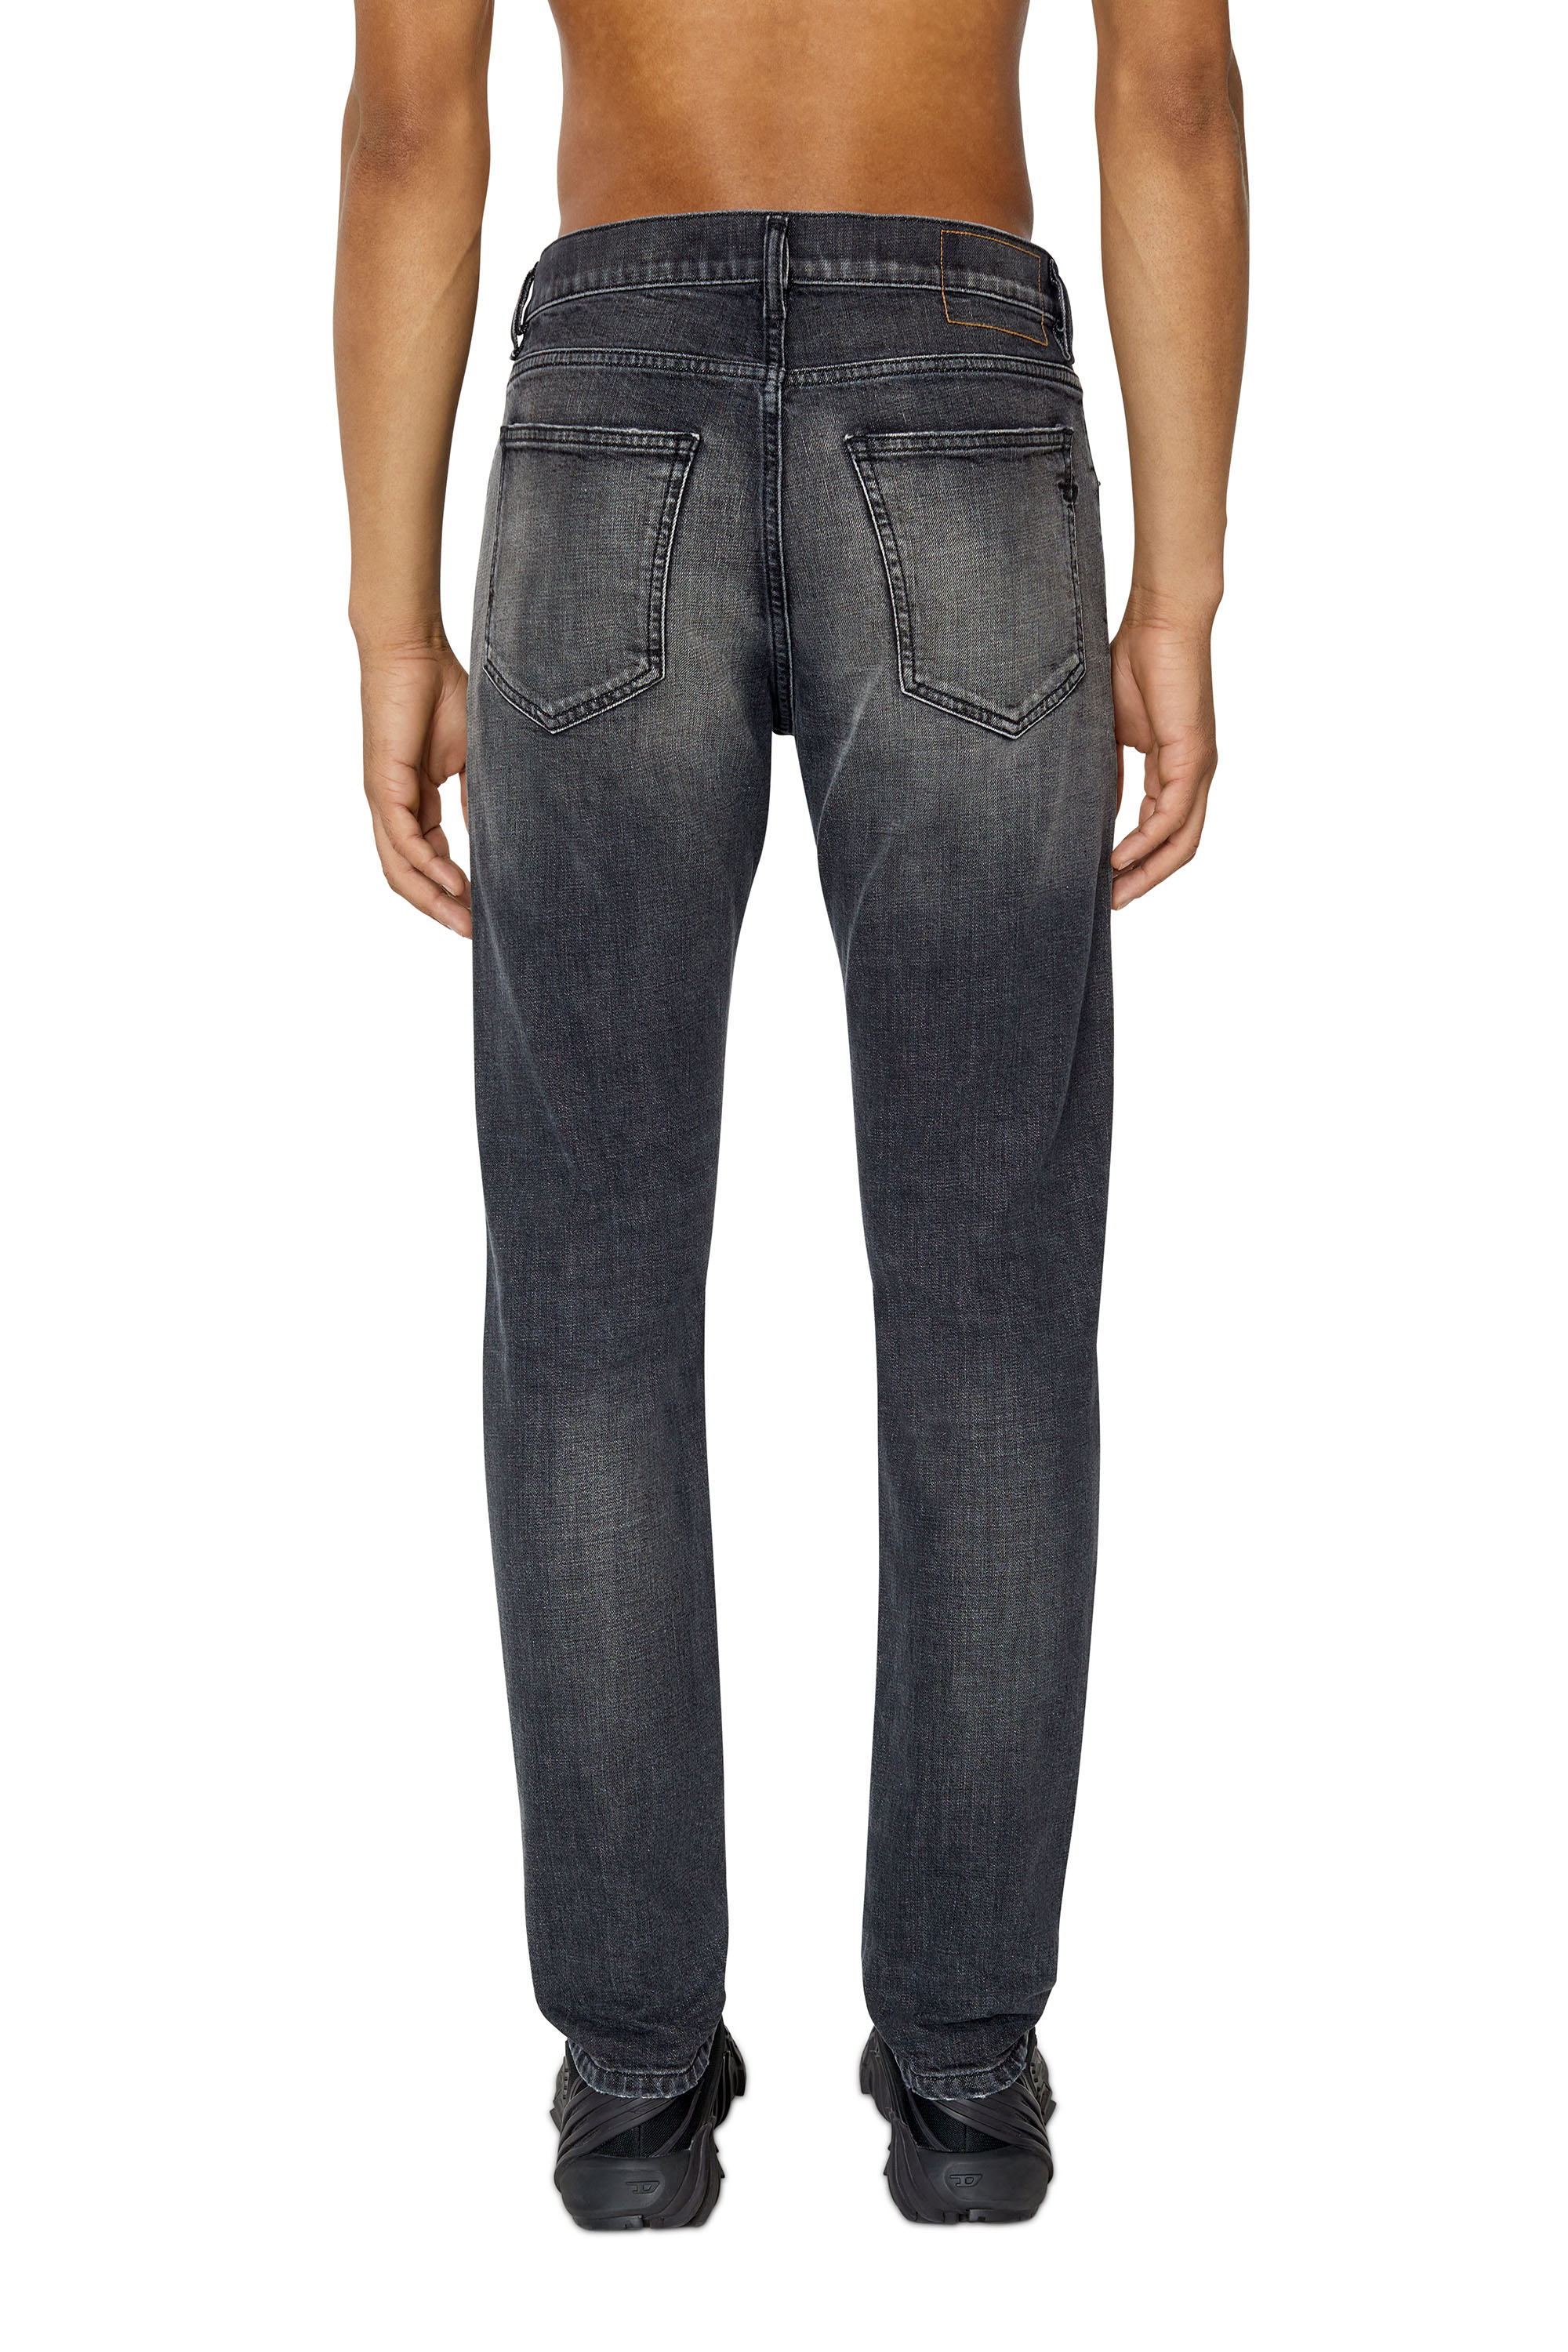 Men's Sale Jeans: Up to 50% Off Slim, Skinny & Bootcut Jeans | Diesel